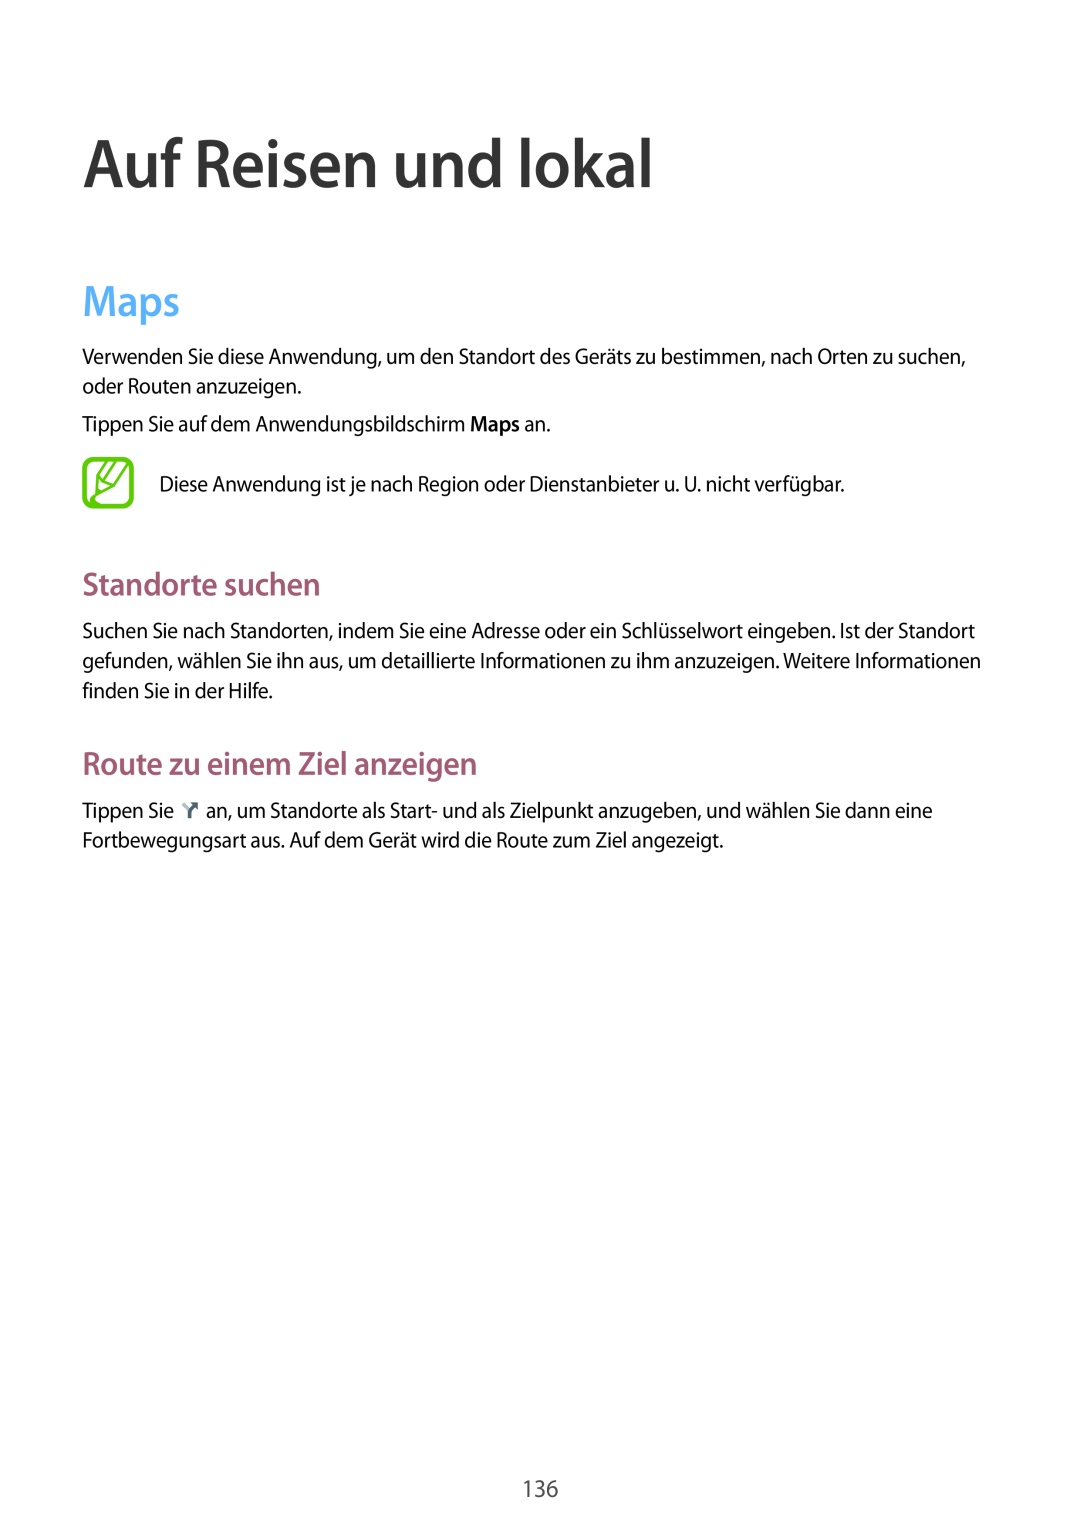 Samsung SM-P9000ZKATUR, SM-P9000ZWAATO manual Auf Reisen und lokal, Maps, Standorte suchen, Route zu einem Ziel anzeigen 